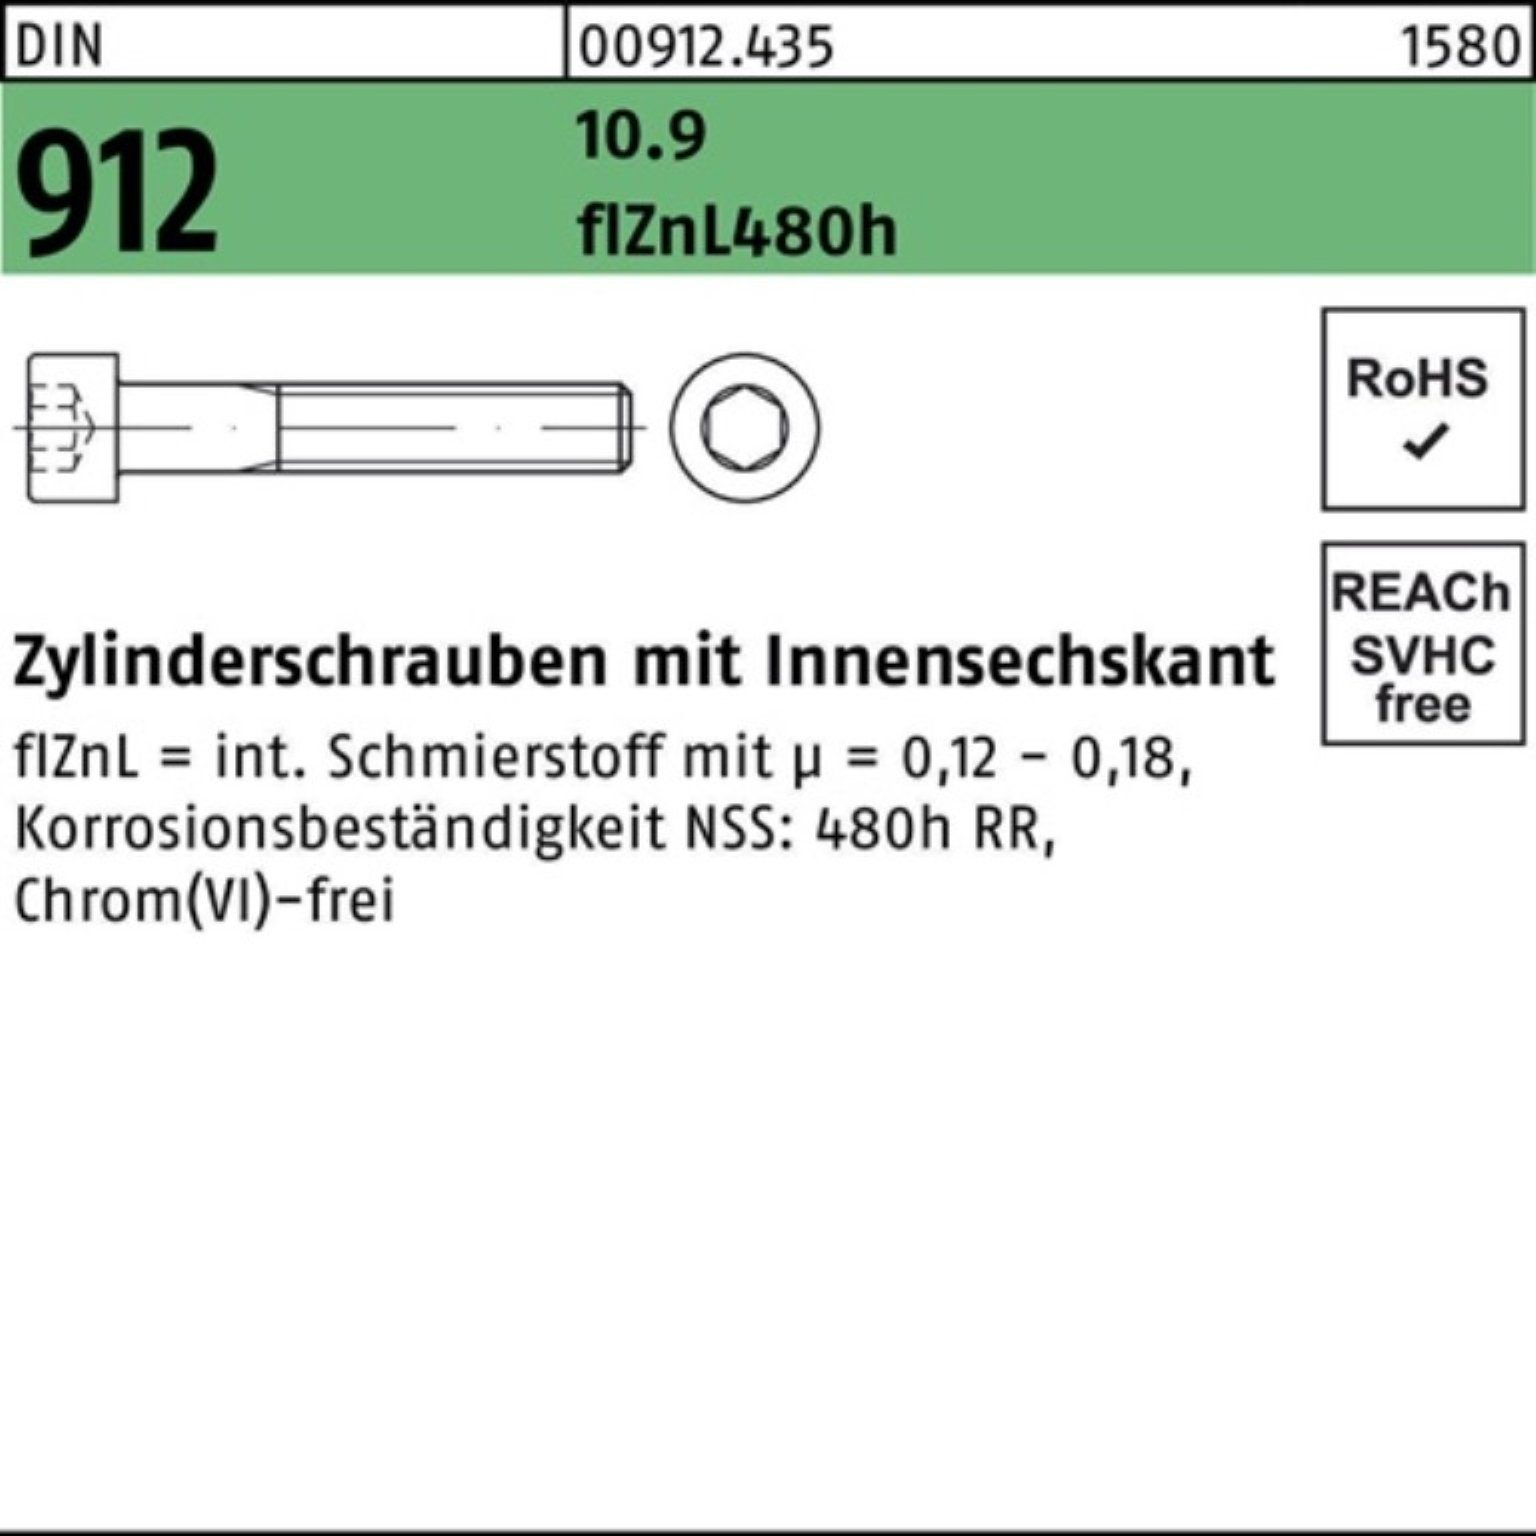 Innen-6kt 912 DIN 10.9 Pack Zylinderschraube M20x75 100er Zylinderschraube flZnL/nc/x/x Reyher